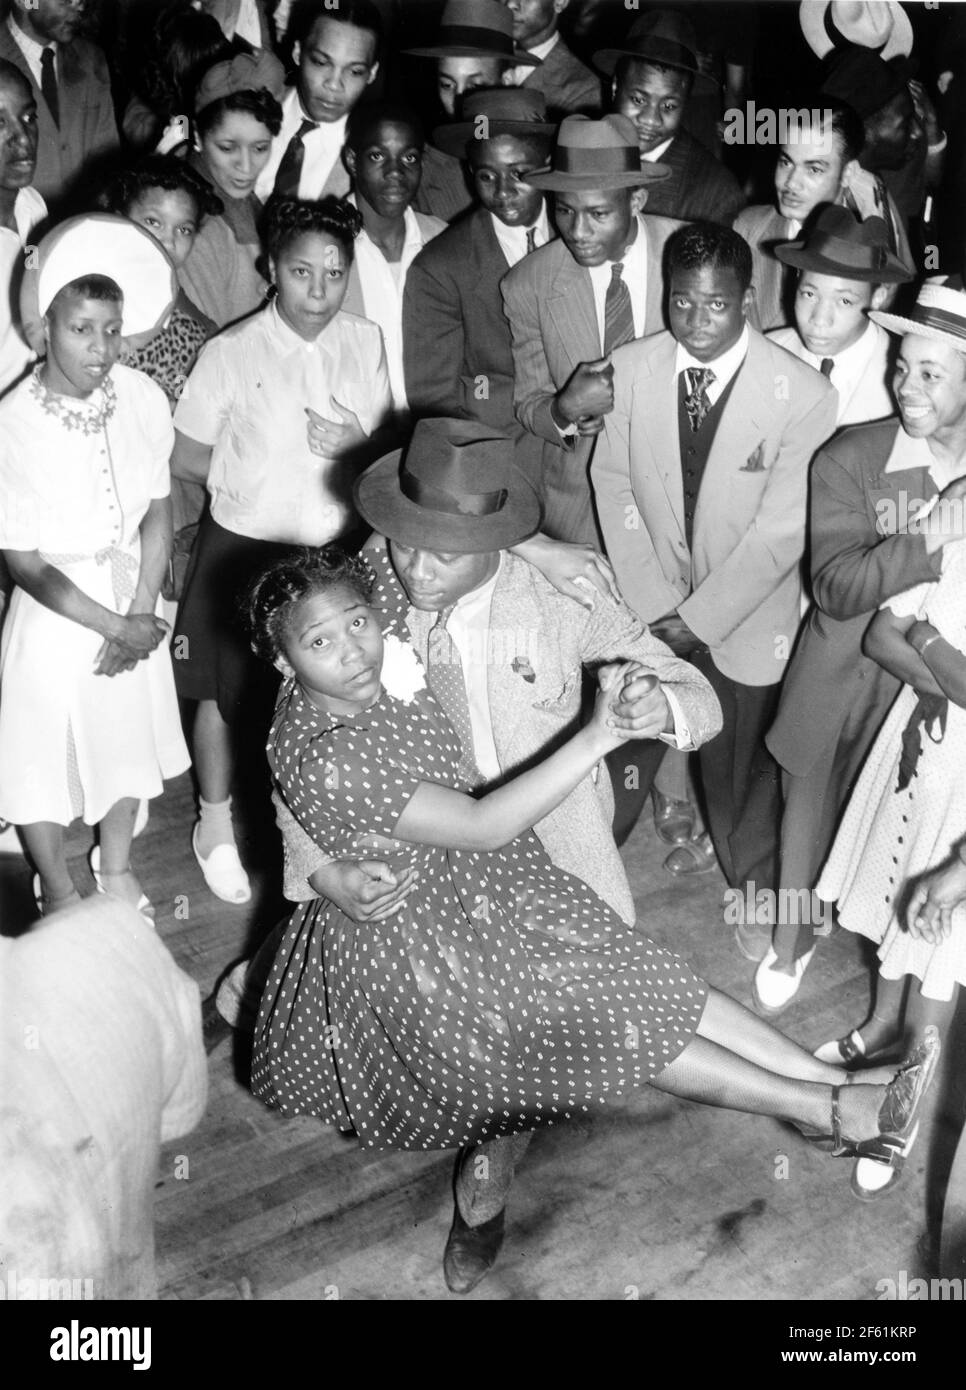 Jazz Club Dancers, 1940s Stock Photo